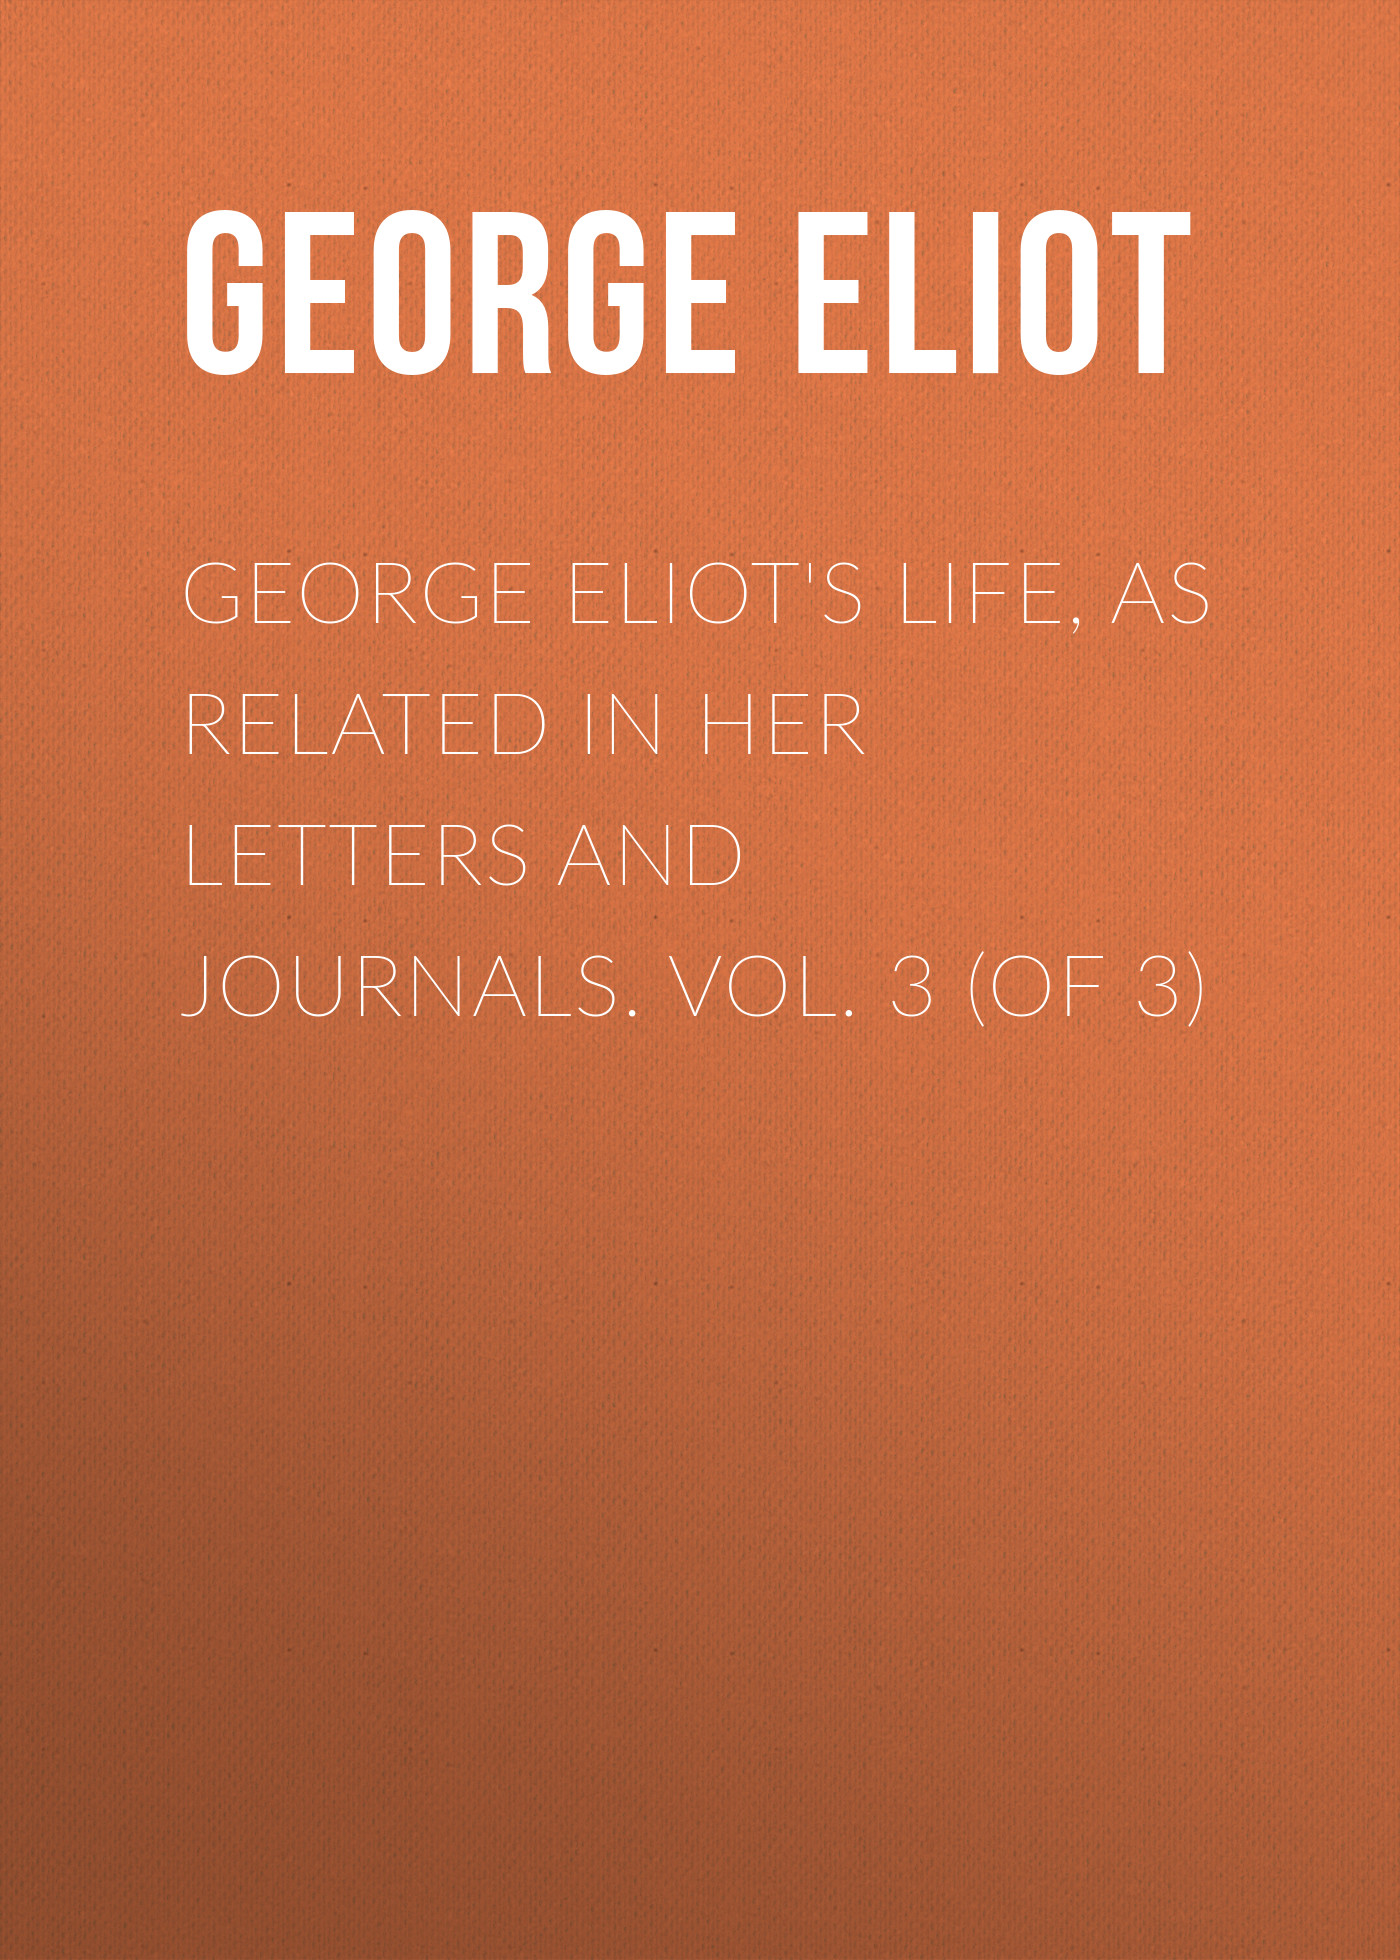 Книга George Eliot's Life, as Related in Her Letters and Journals. Vol. 3 (of 3) из серии , созданная George Eliot, может относится к жанру Литература 19 века, Зарубежная старинная литература, Зарубежная классика. Стоимость электронной книги George Eliot's Life, as Related in Her Letters and Journals. Vol. 3 (of 3) с идентификатором 24712777 составляет 0 руб.